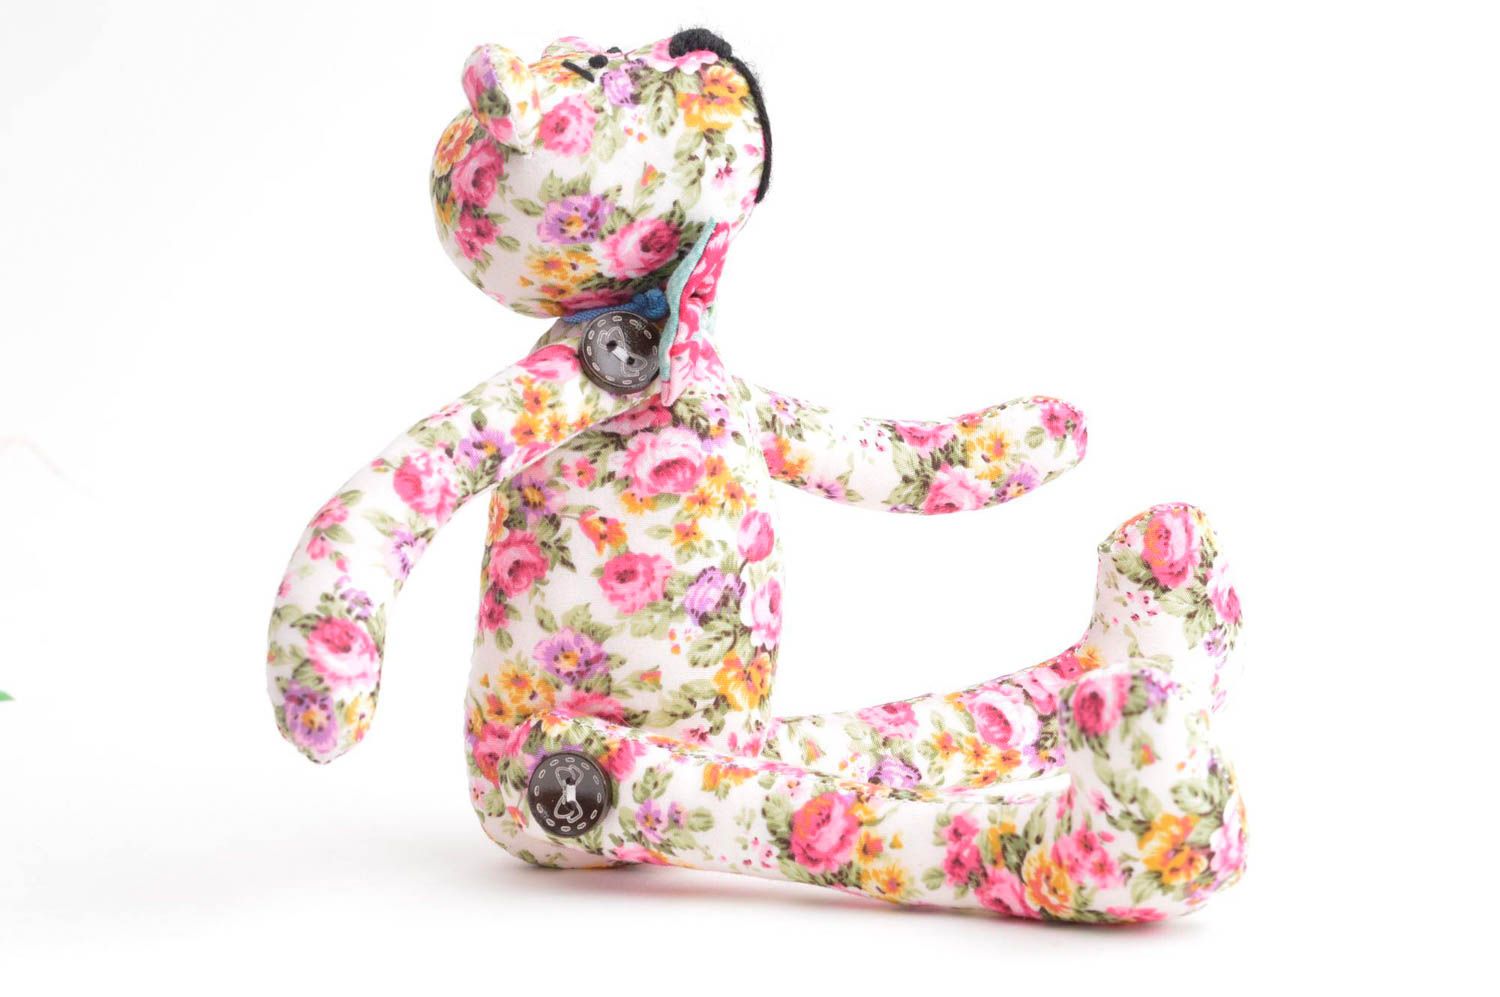 Игрушка мишка в цветах игрушка ручной работы интересный подарок для детей и дома фото 2